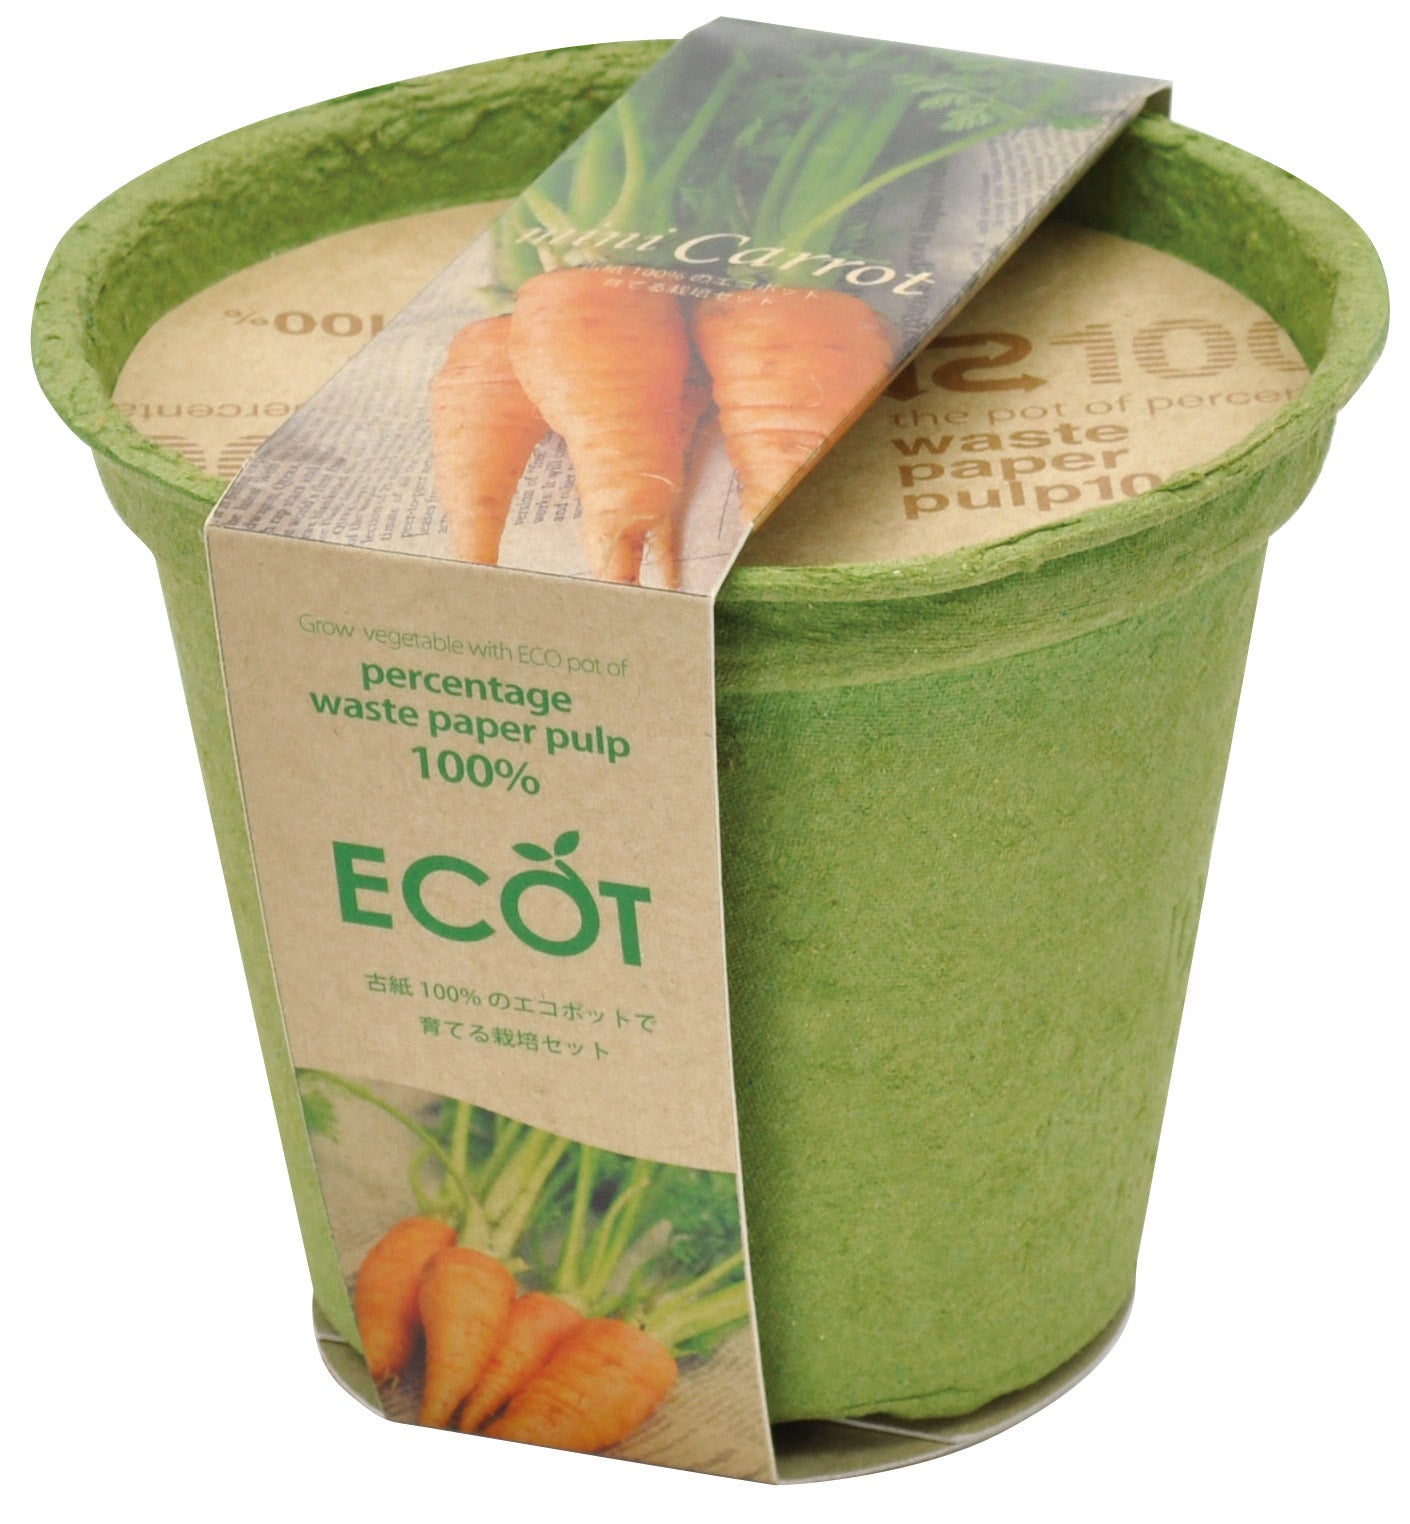 再生紙小花盆 ECOT - 胡蘿蔔/紫蘇葉